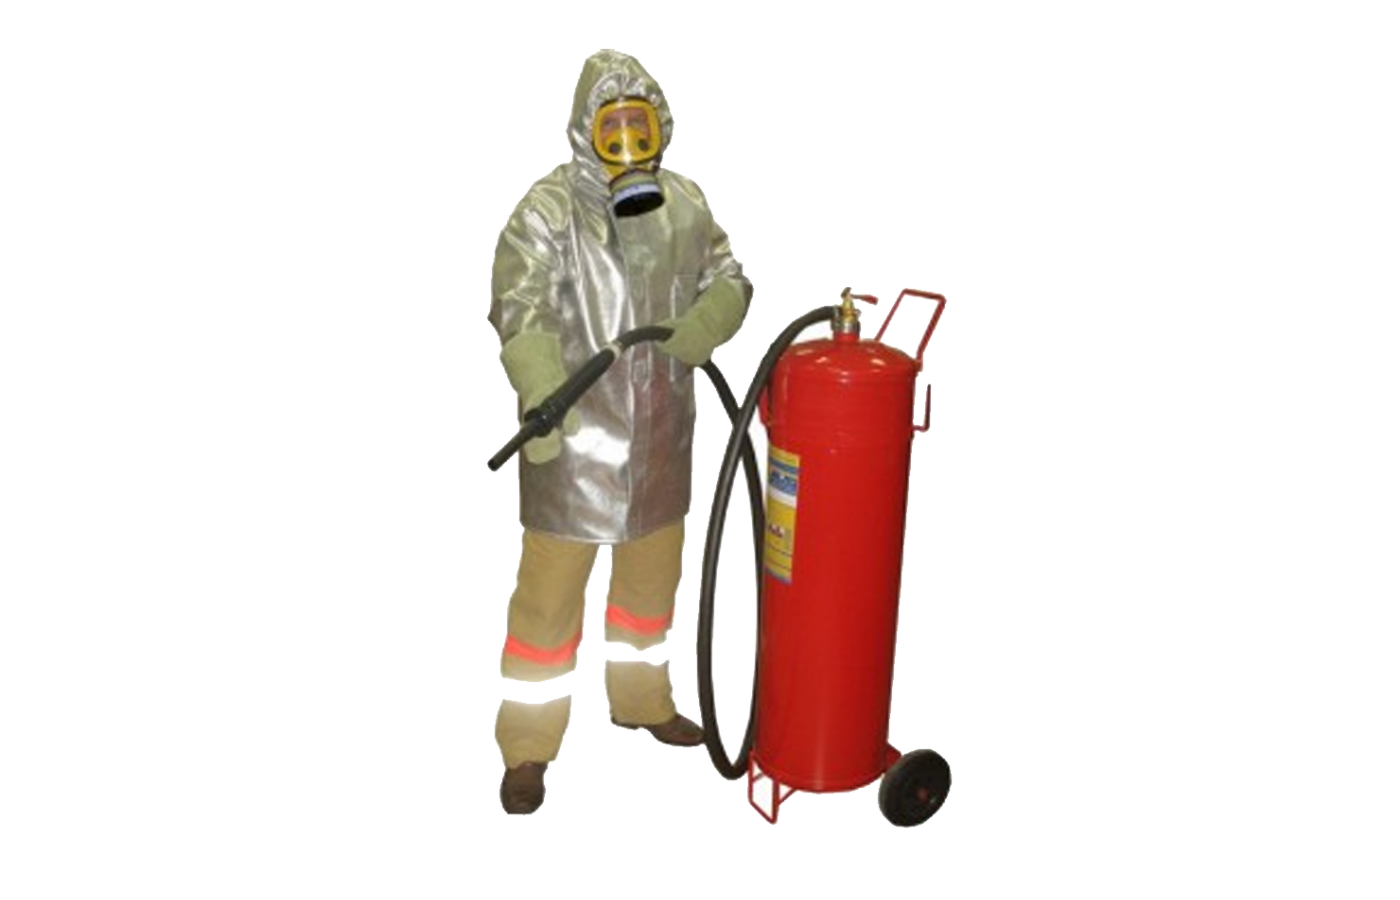 Плащ металлизированный комплекта защитной экипировки пожарного-добровольца (КЗЭПД) «Шанс»-Д